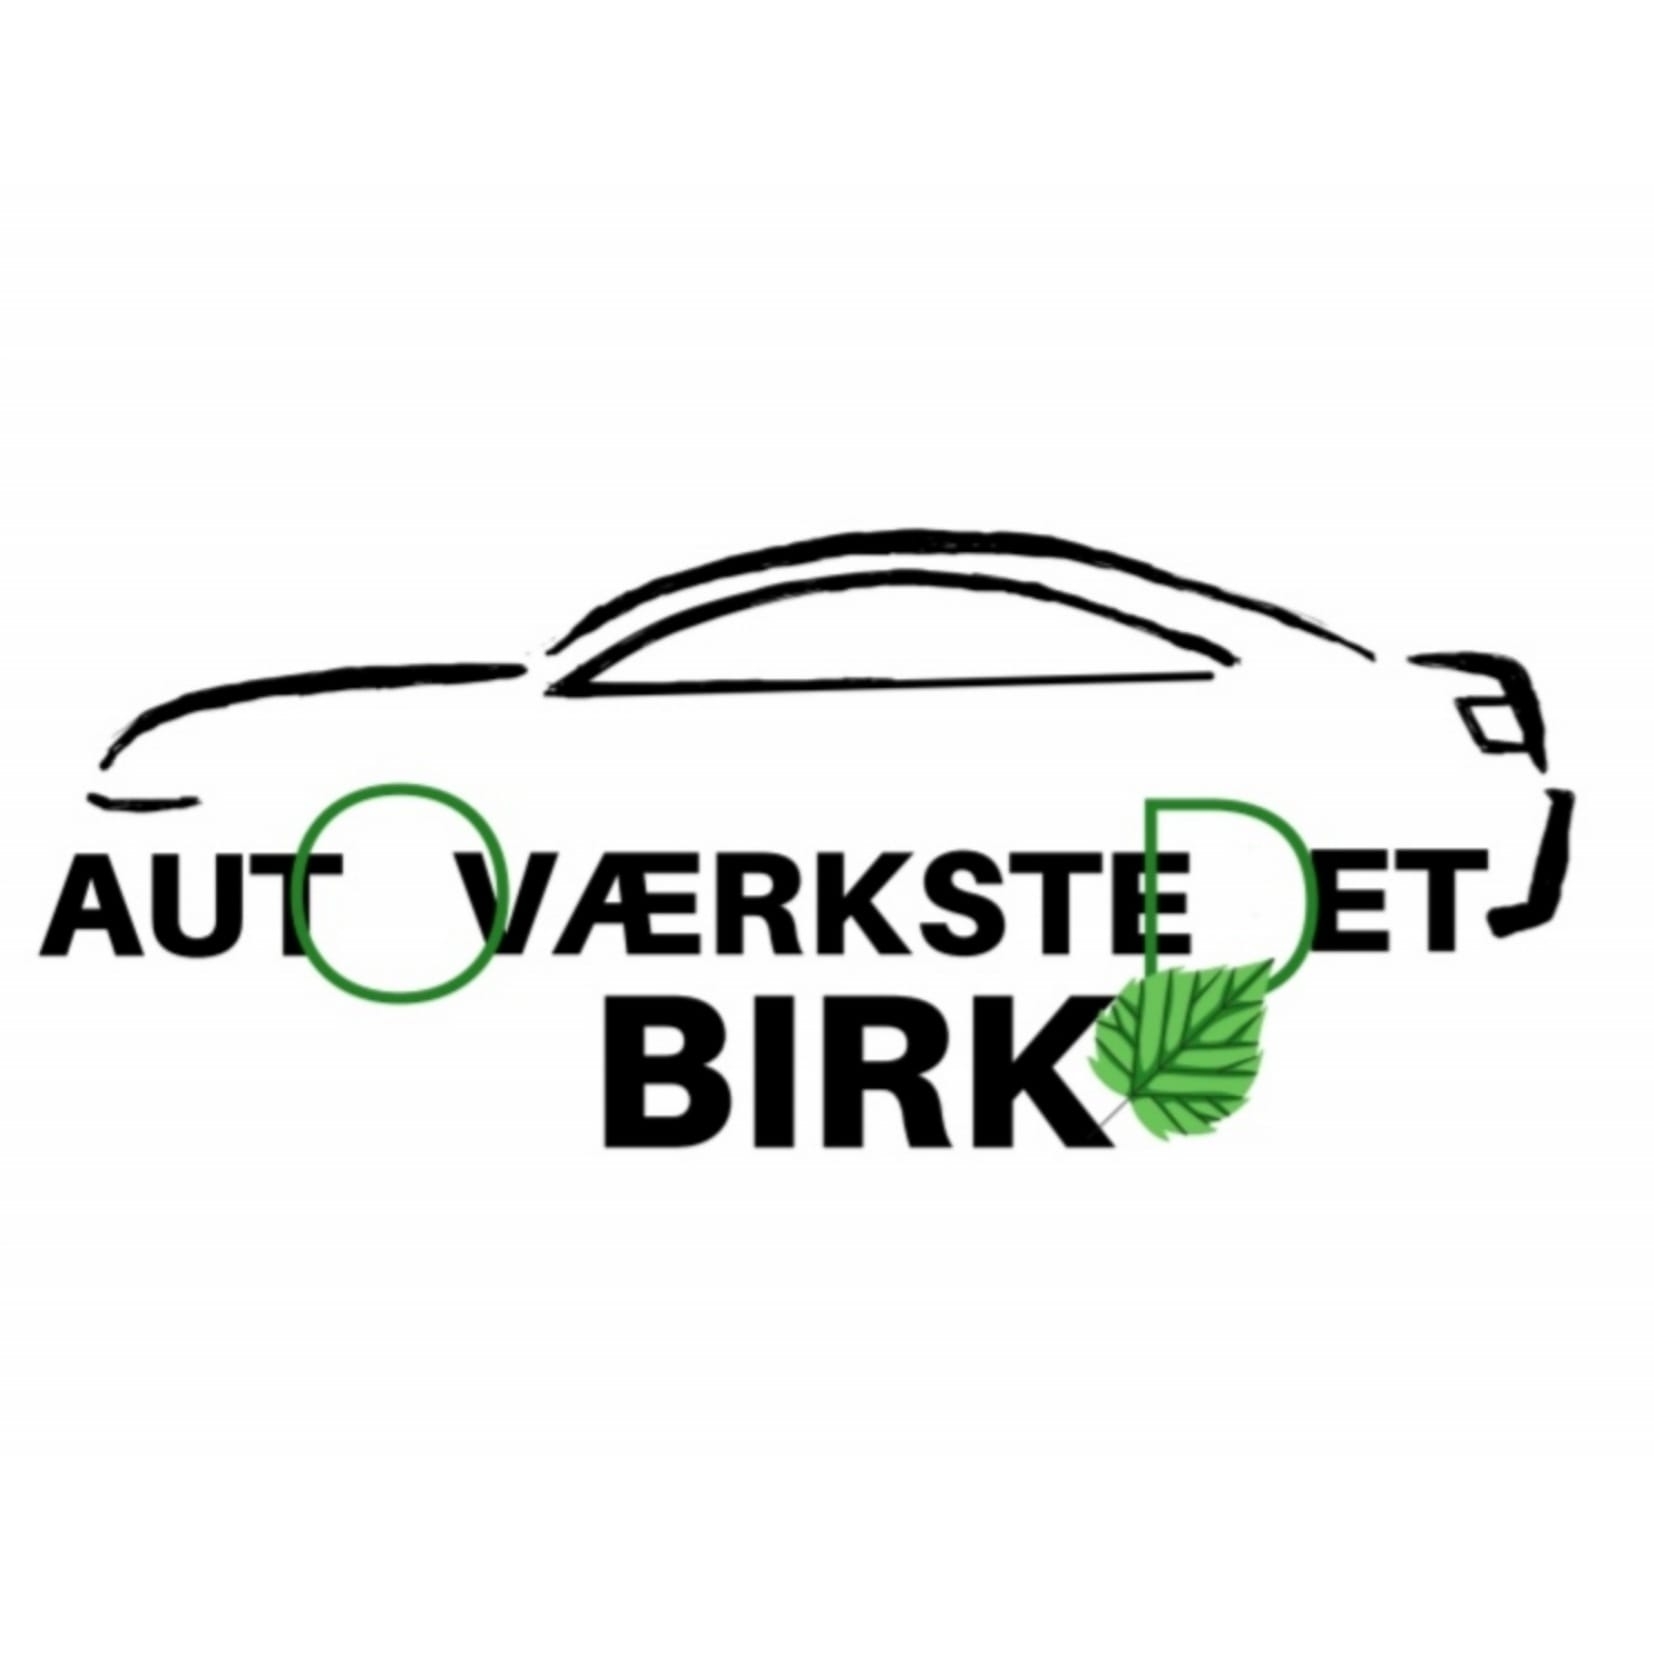 Autoværkstedet Birk - Hella Service Partner logo